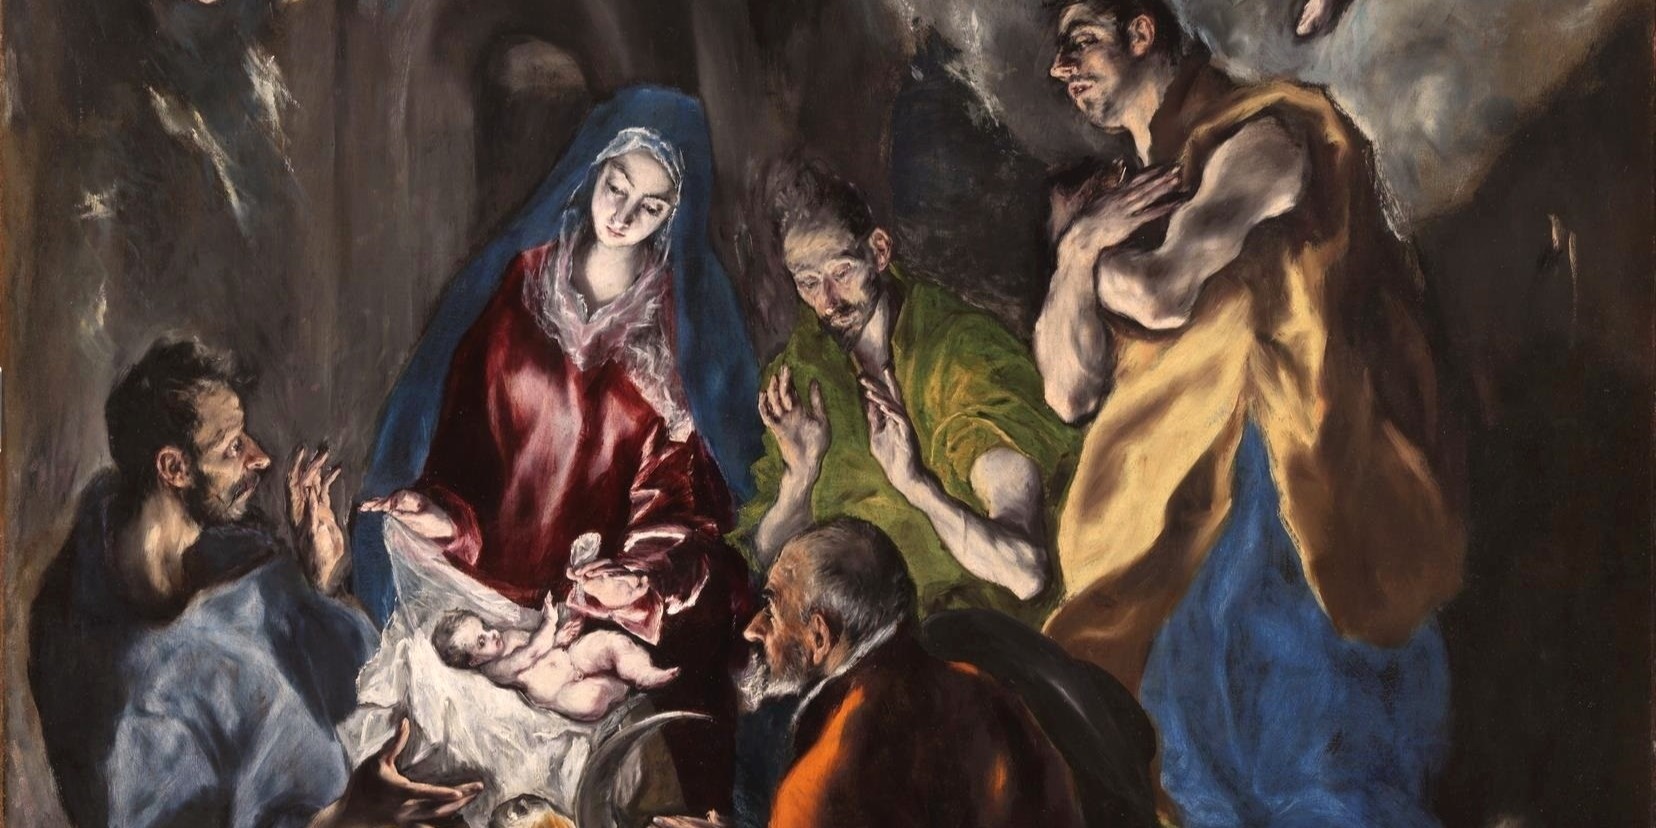 Dettaglio tratto dall'Adorazione dei pastori di El Greco. Su uno sfondo scuro si stagliano le figure luminose del bambinello, posto verso l'estremità sinistra del quadro, della Vergine e dei tre pastori che circondano la piccola culla.